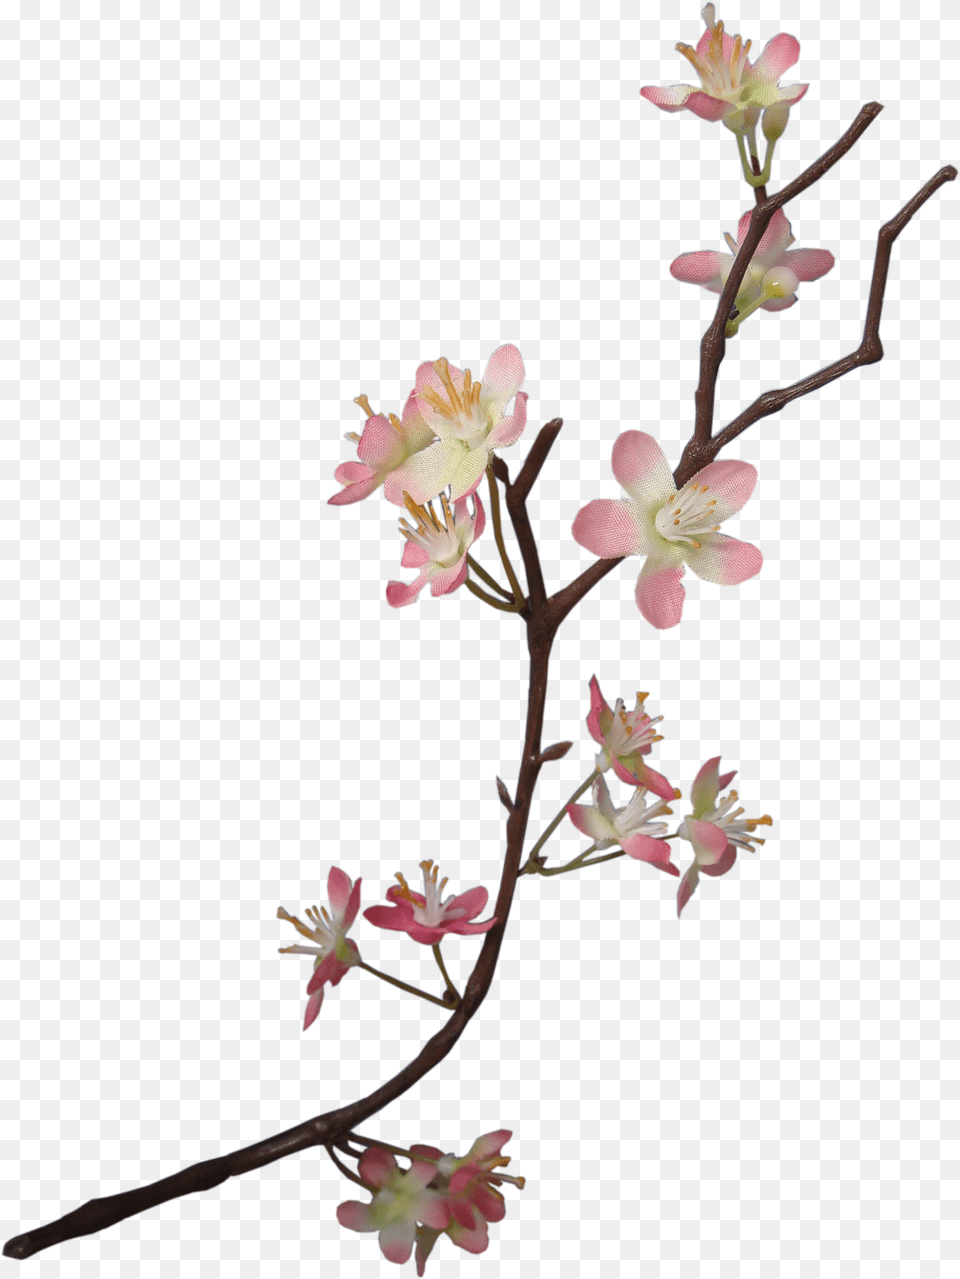 Apple Blossom Flower, Plant, Petal, Geranium, Flower Arrangement Png